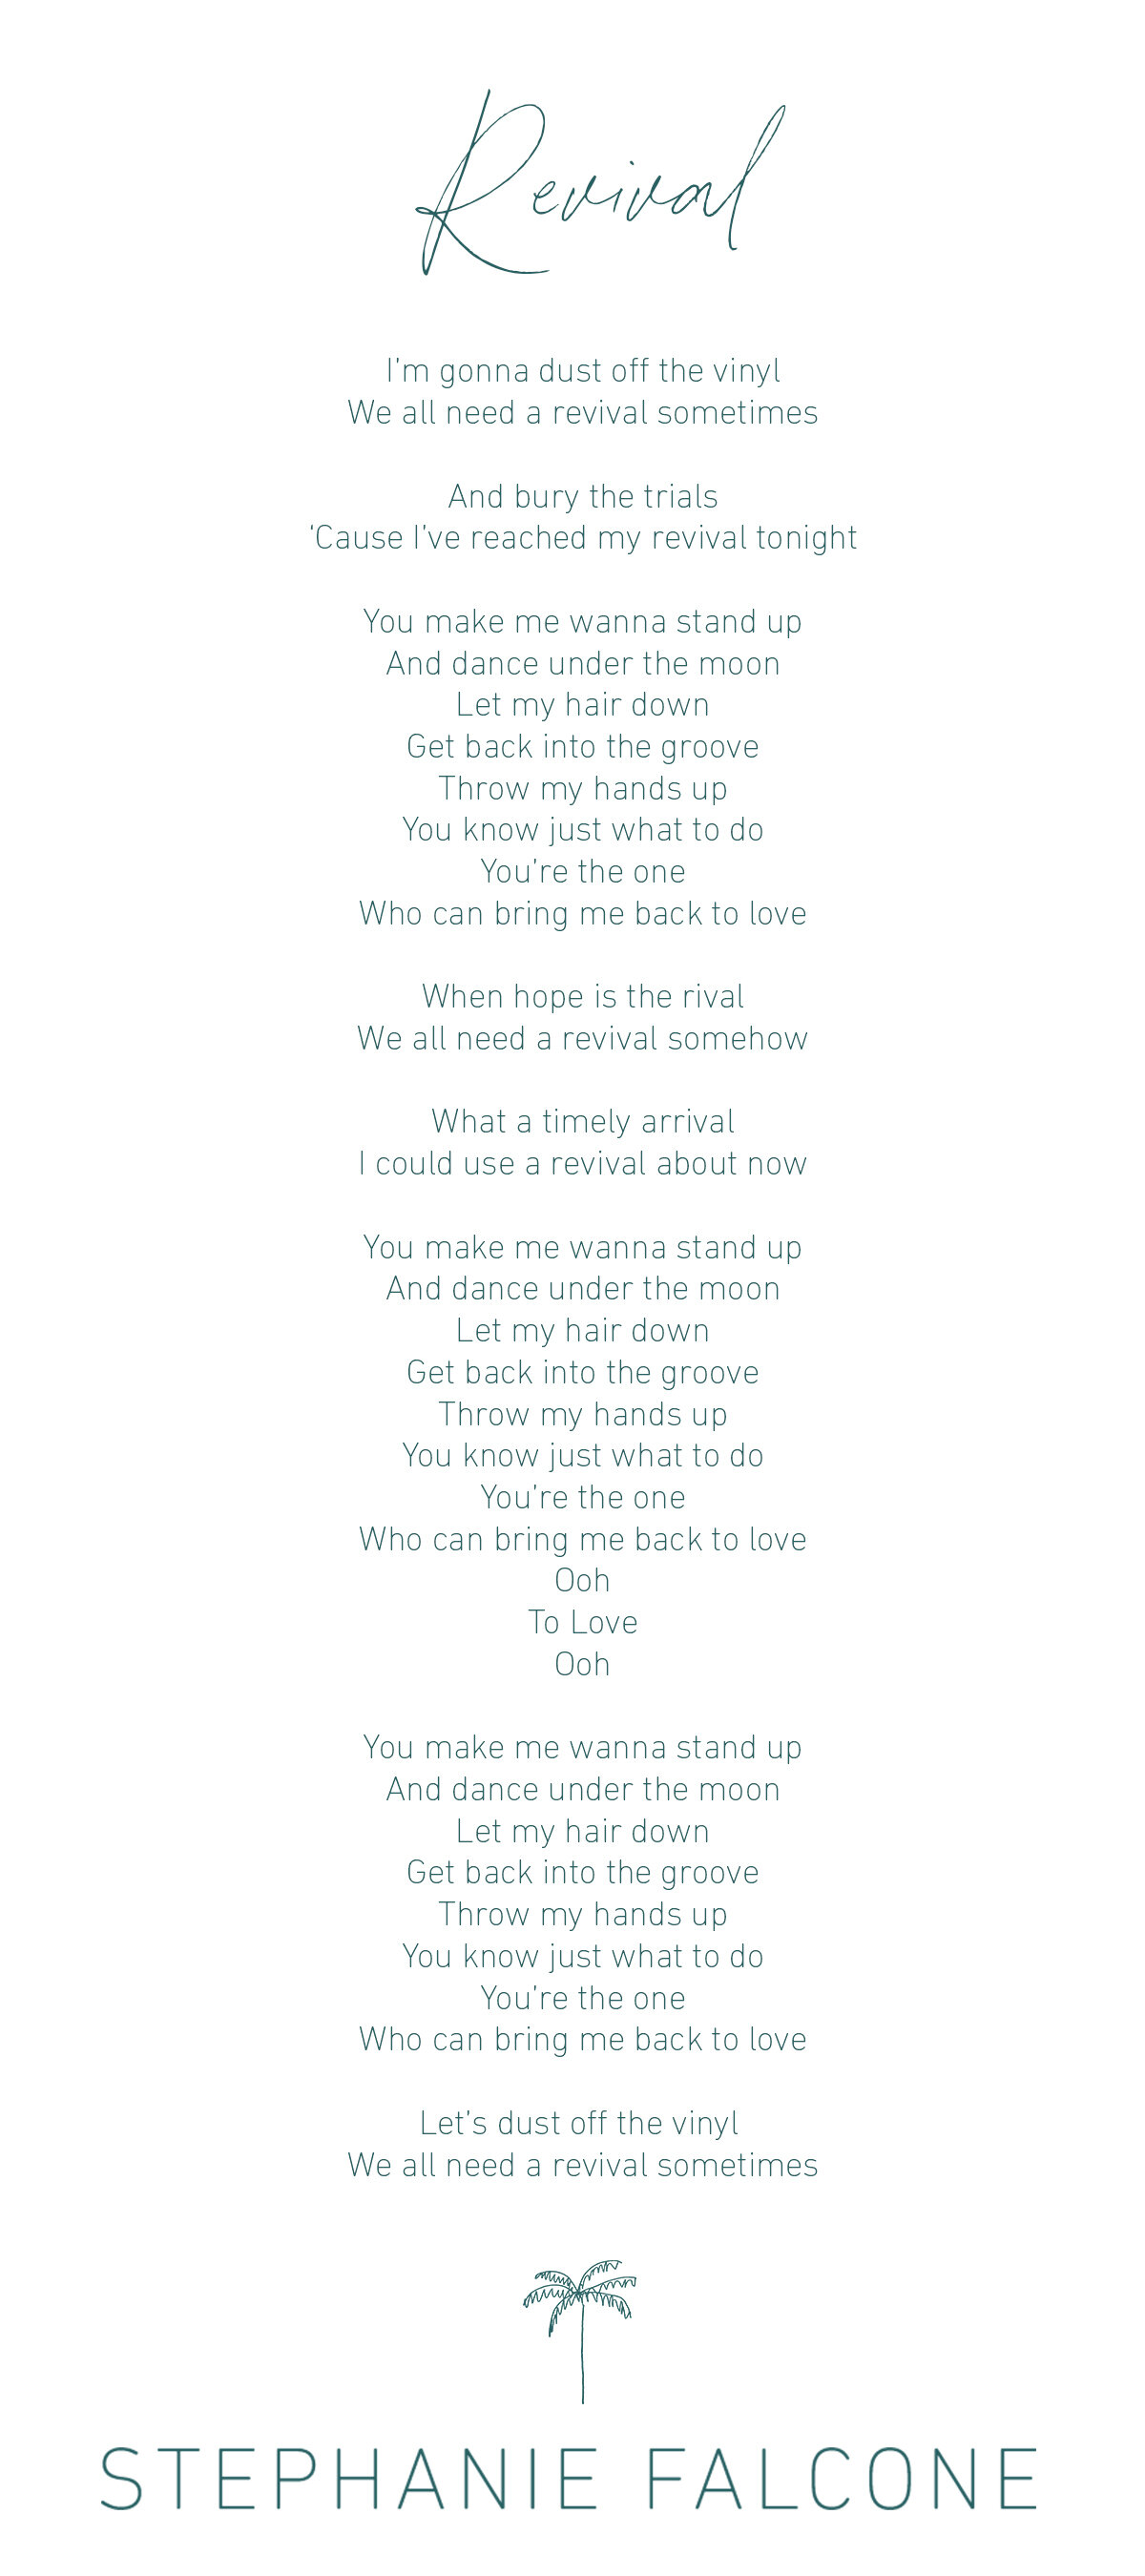 Just a fun lil piece. Lyrics to a @thebandwillis song